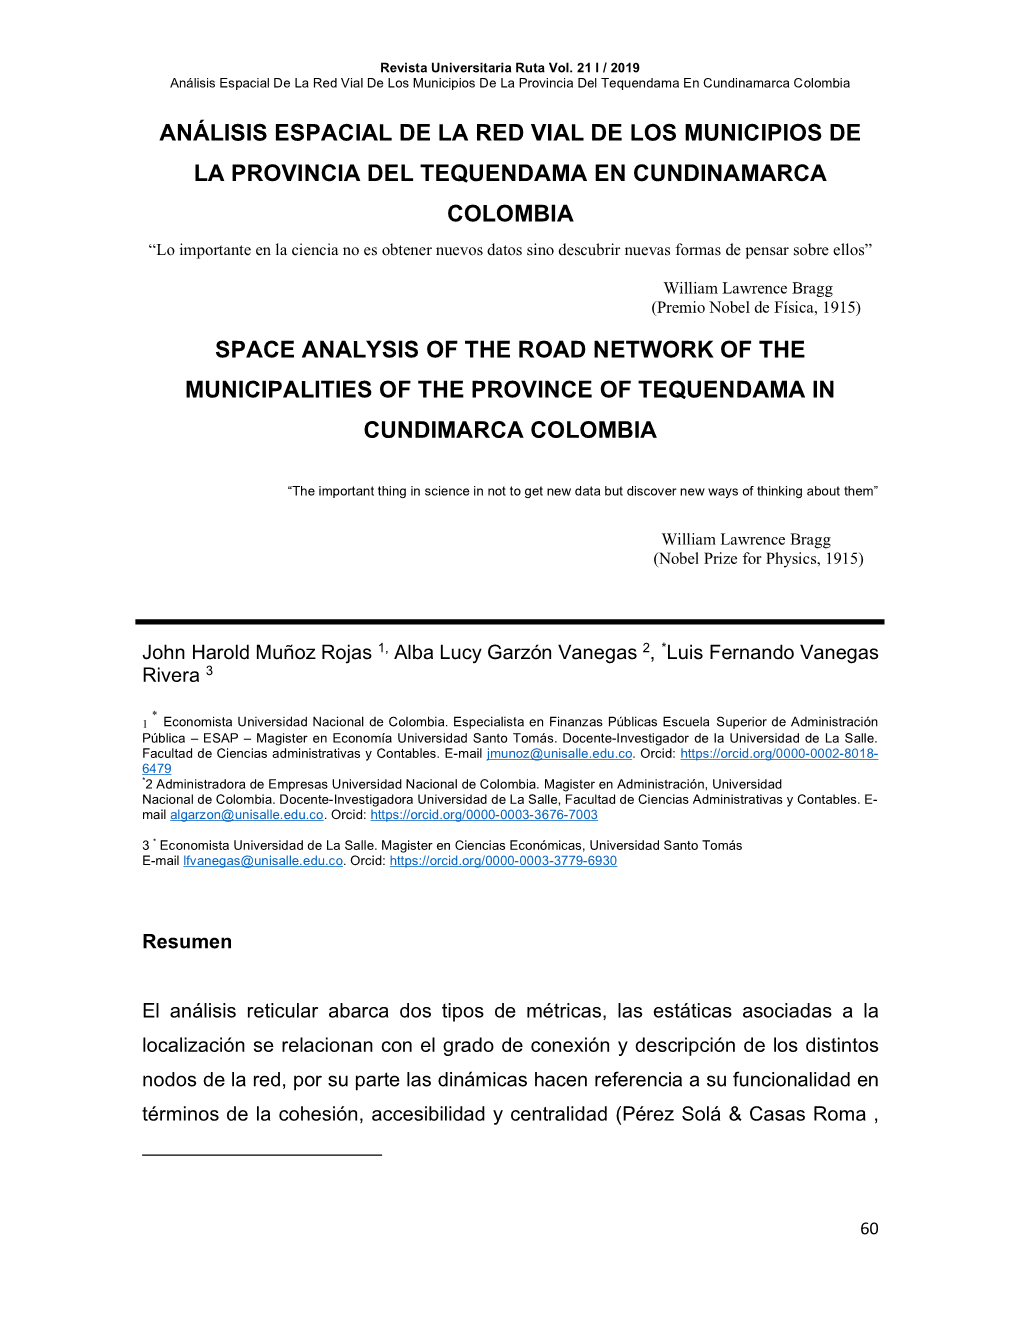 Análisis Espacial De La Red Vial De Los Municipios De La Provincia Del Tequendama En Cundinamarca Colombia Space Analysis of T